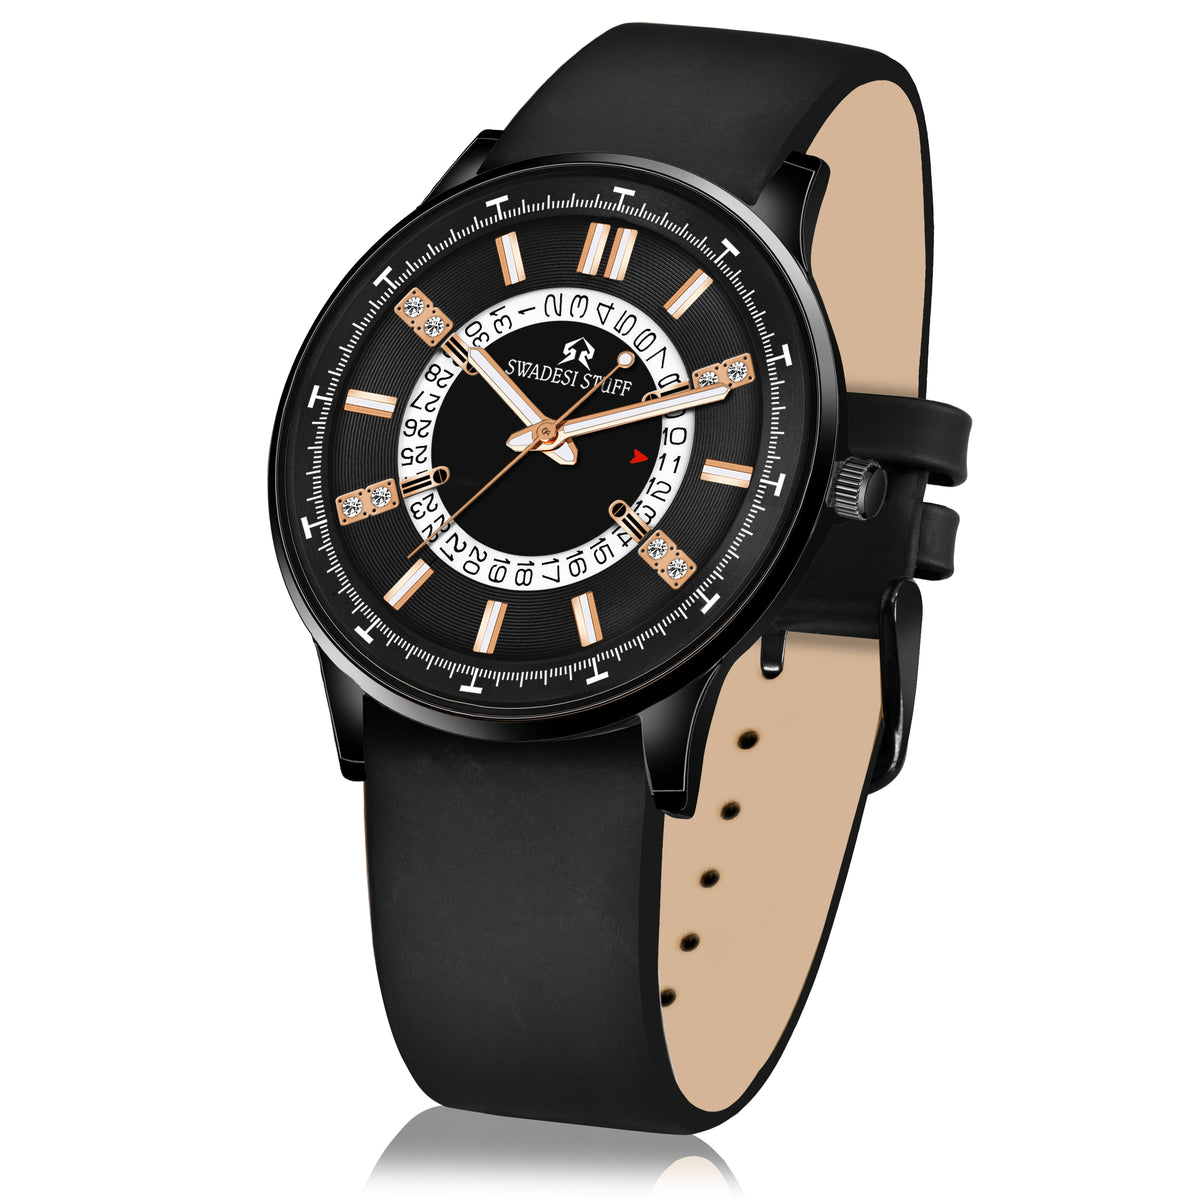 Trailblazer - Black - Premium & Luxurious Watch For Men